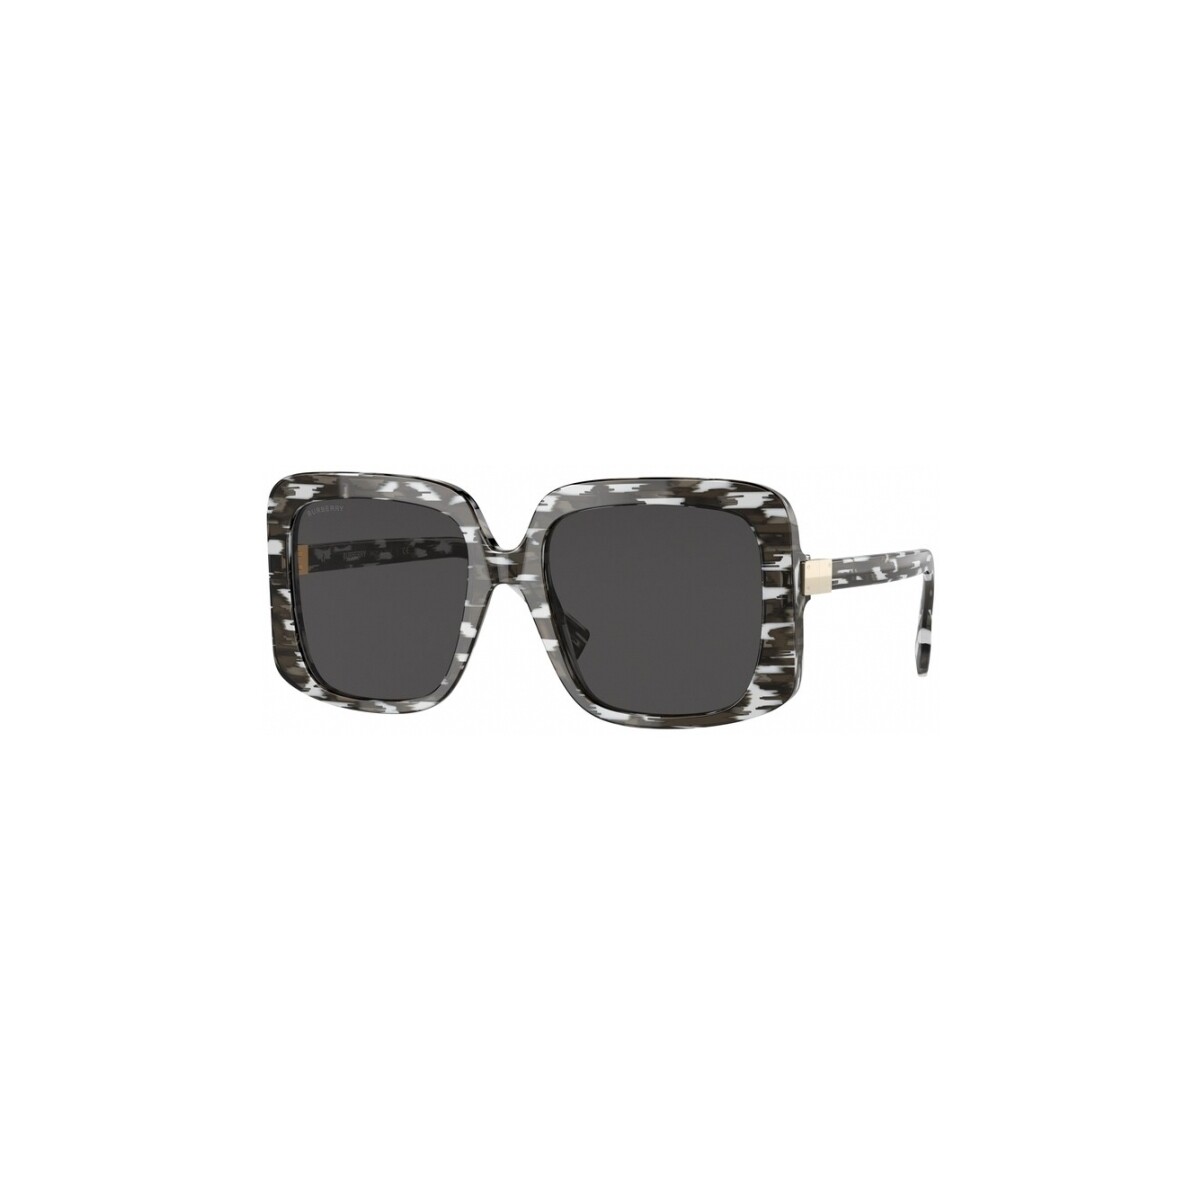 Orologi & Gioielli Donna Occhiali da sole Burberry BE4363 PENELOPE Occhiali da sole, Nero/Grigio, 55 mm Nero